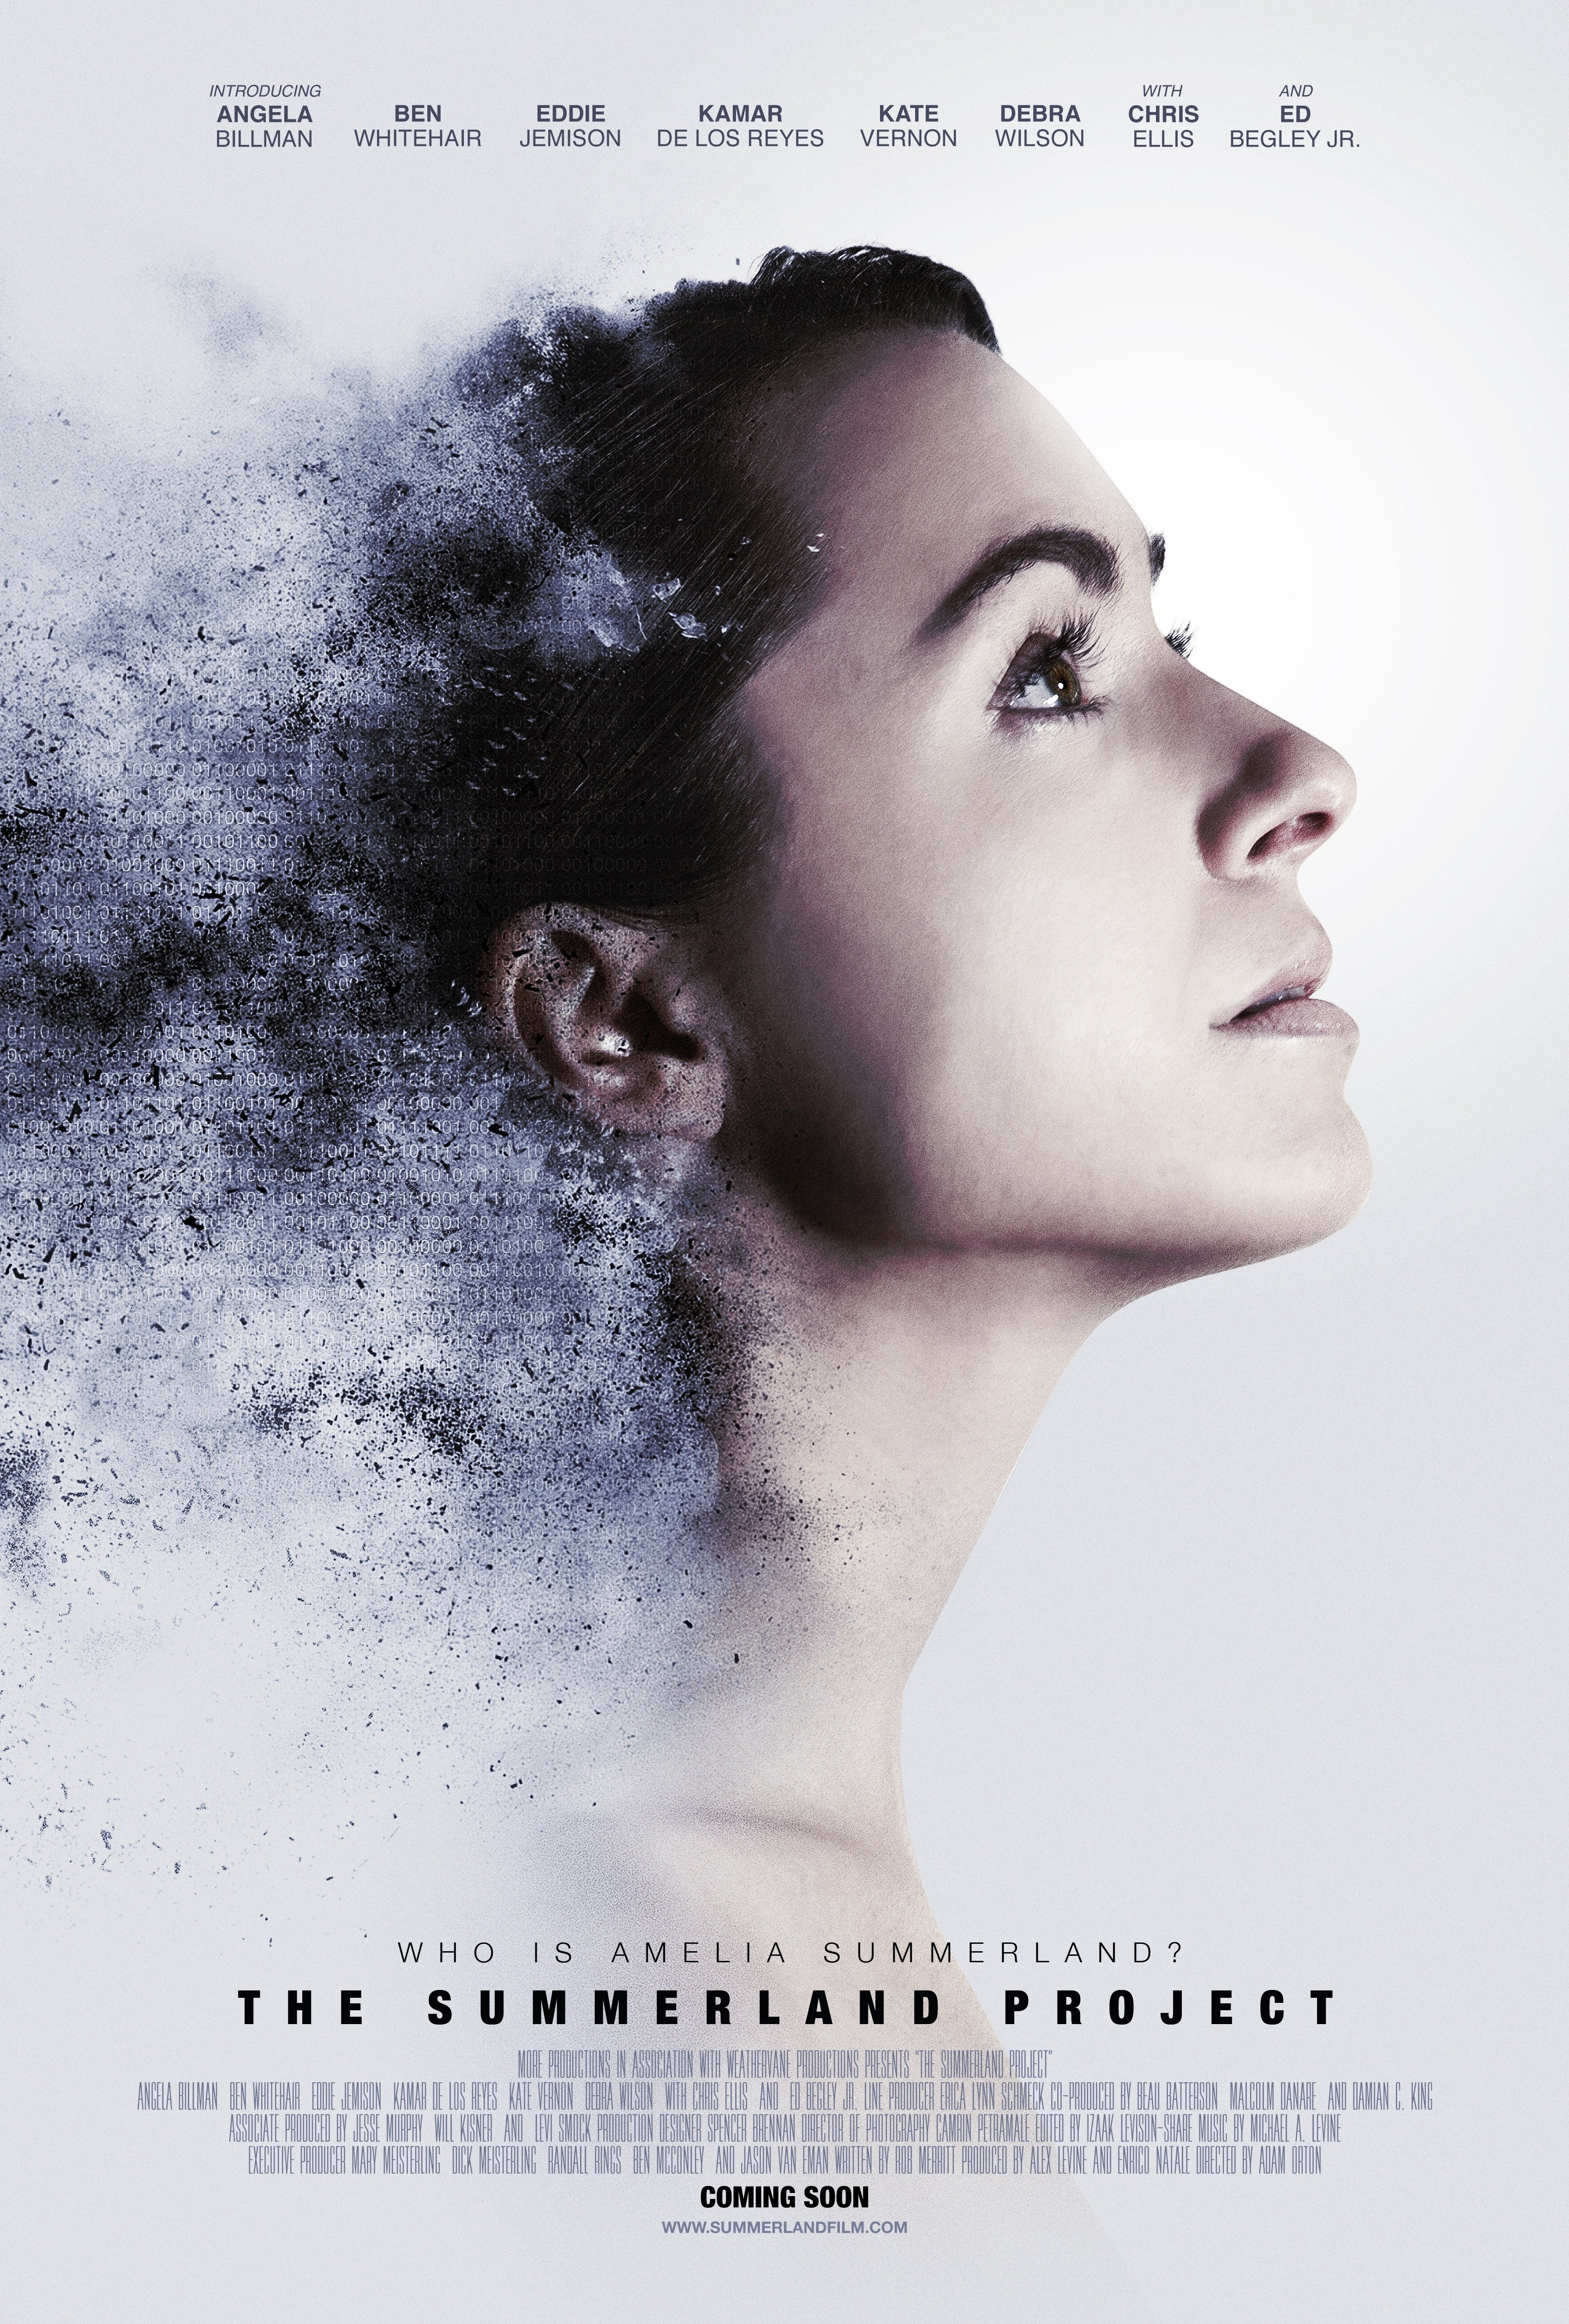 Amelia 2.0 (2017) starring Kate Vernon on DVD on DVD